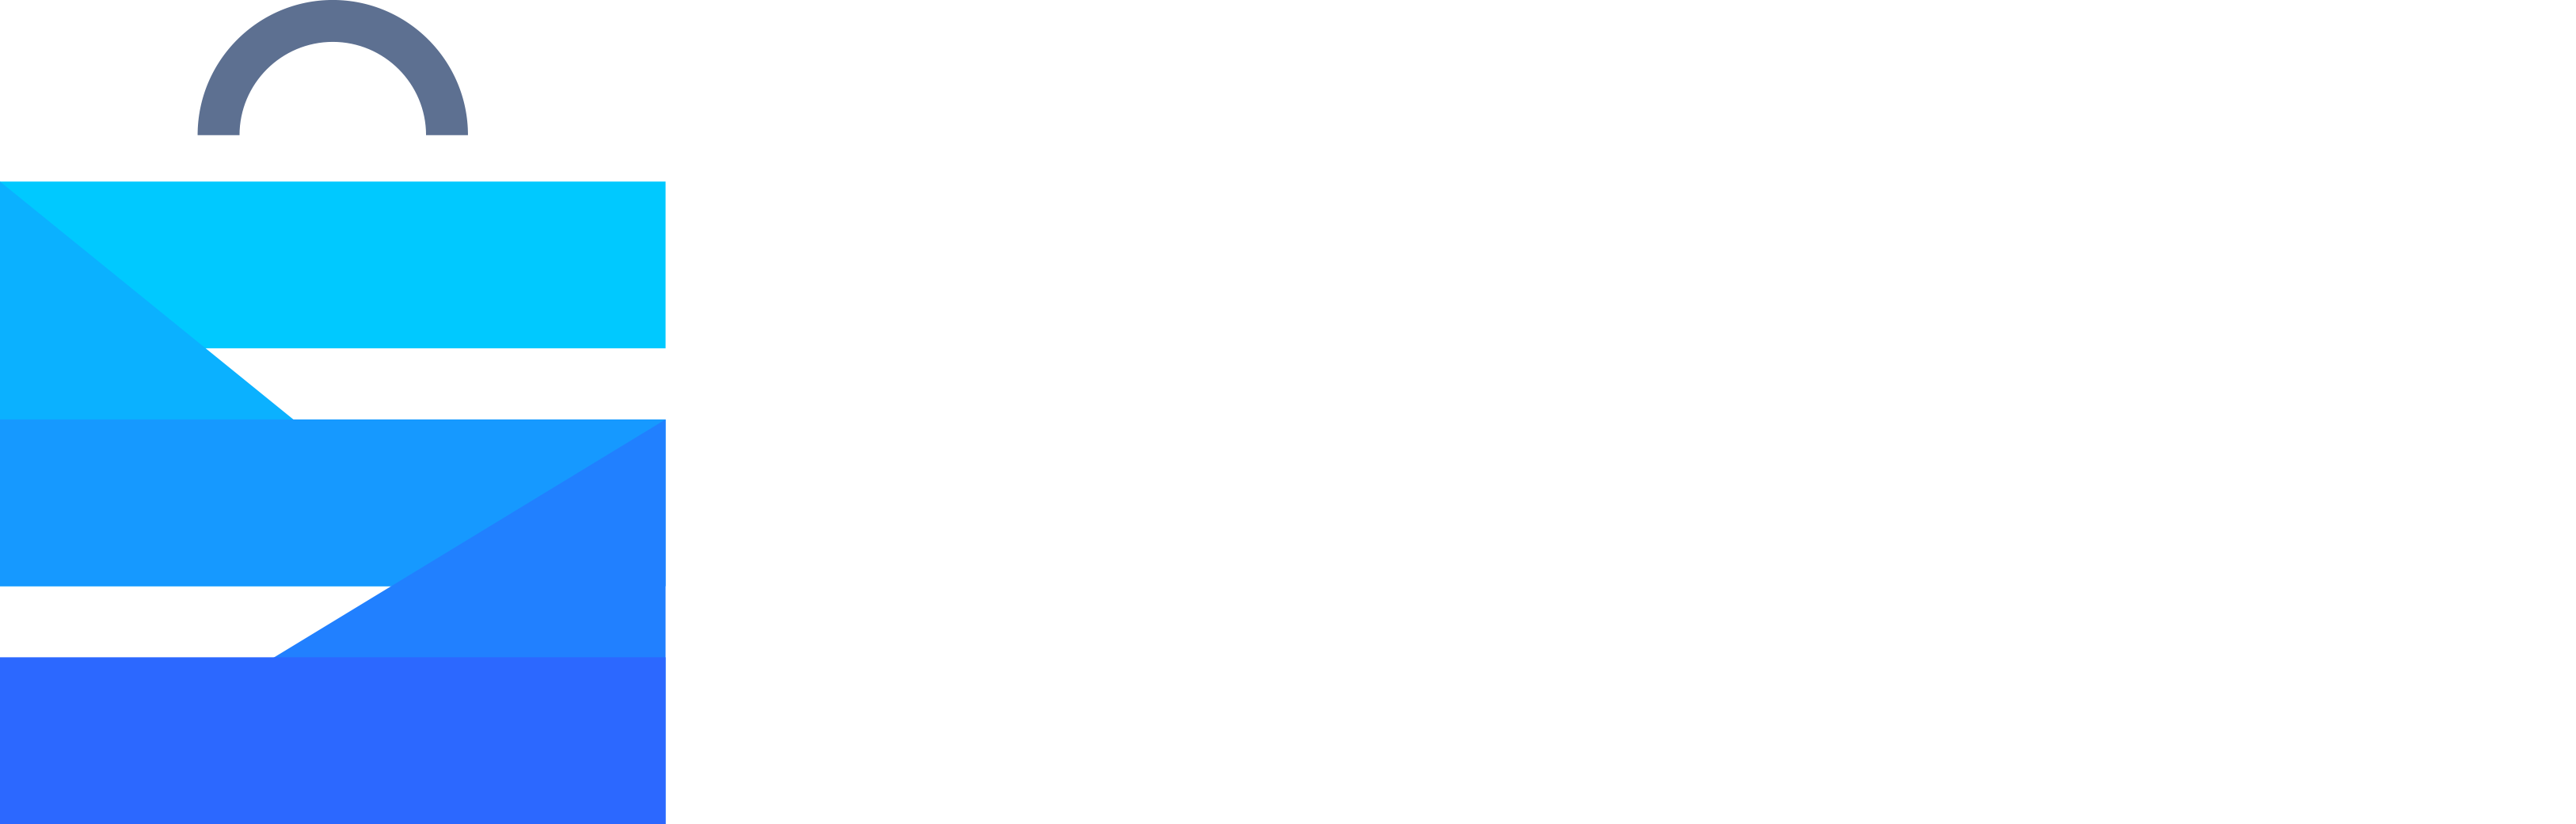 Amazon Sellers Help